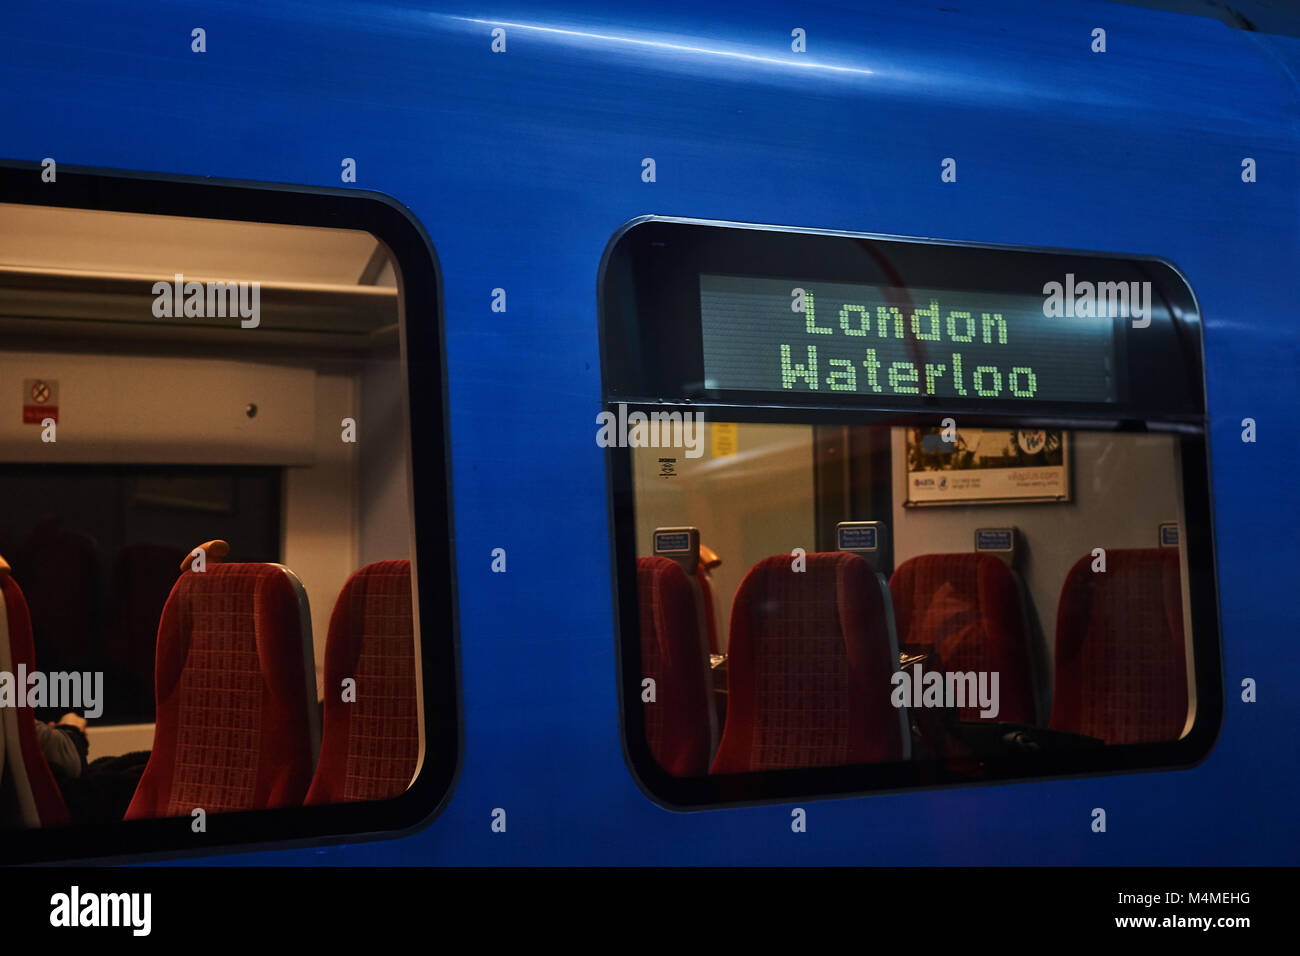 Un tren del sur azul, con destino a Londres Waterloo mostrando en el lateral del tren, asientos visible dentro del carro esperando en la estación Foto de stock